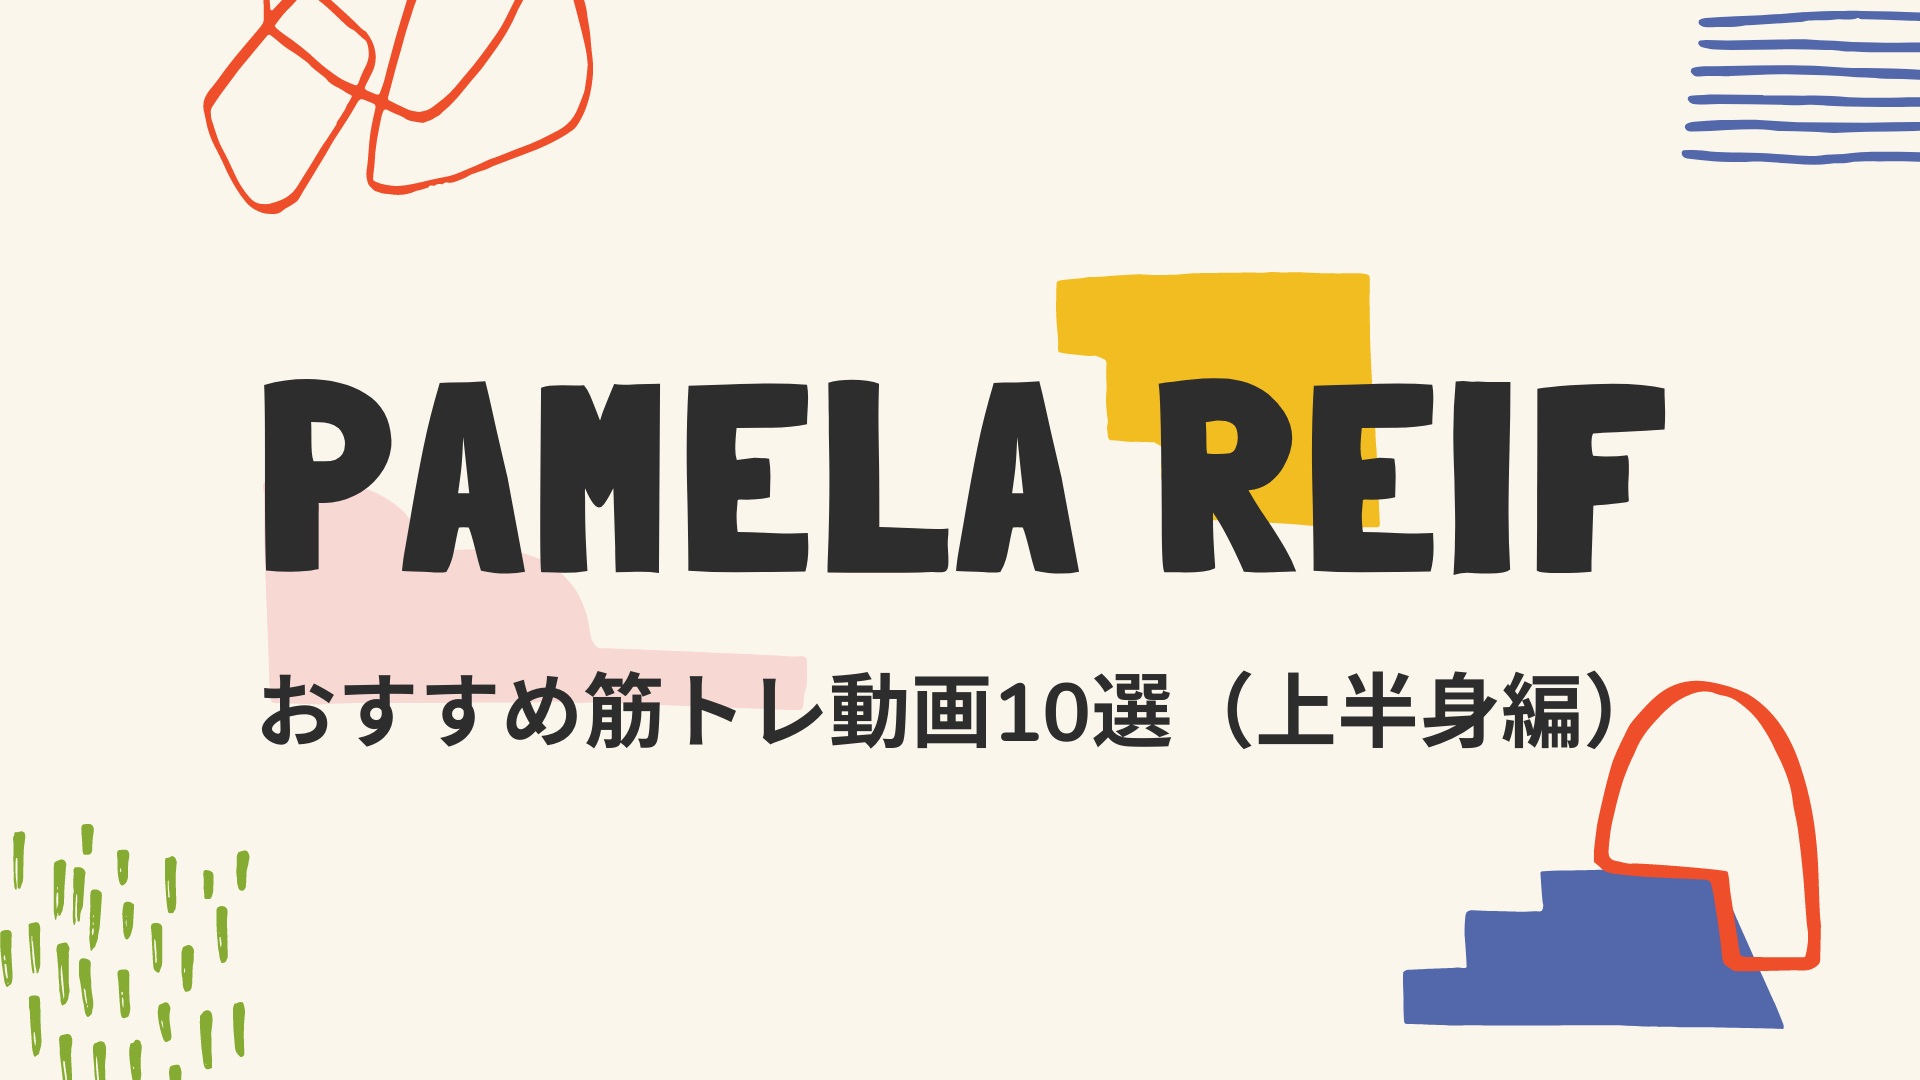 Pamela Reif おすすめ筋トレ動画10選 部位別 まりーの学ぶろぐ